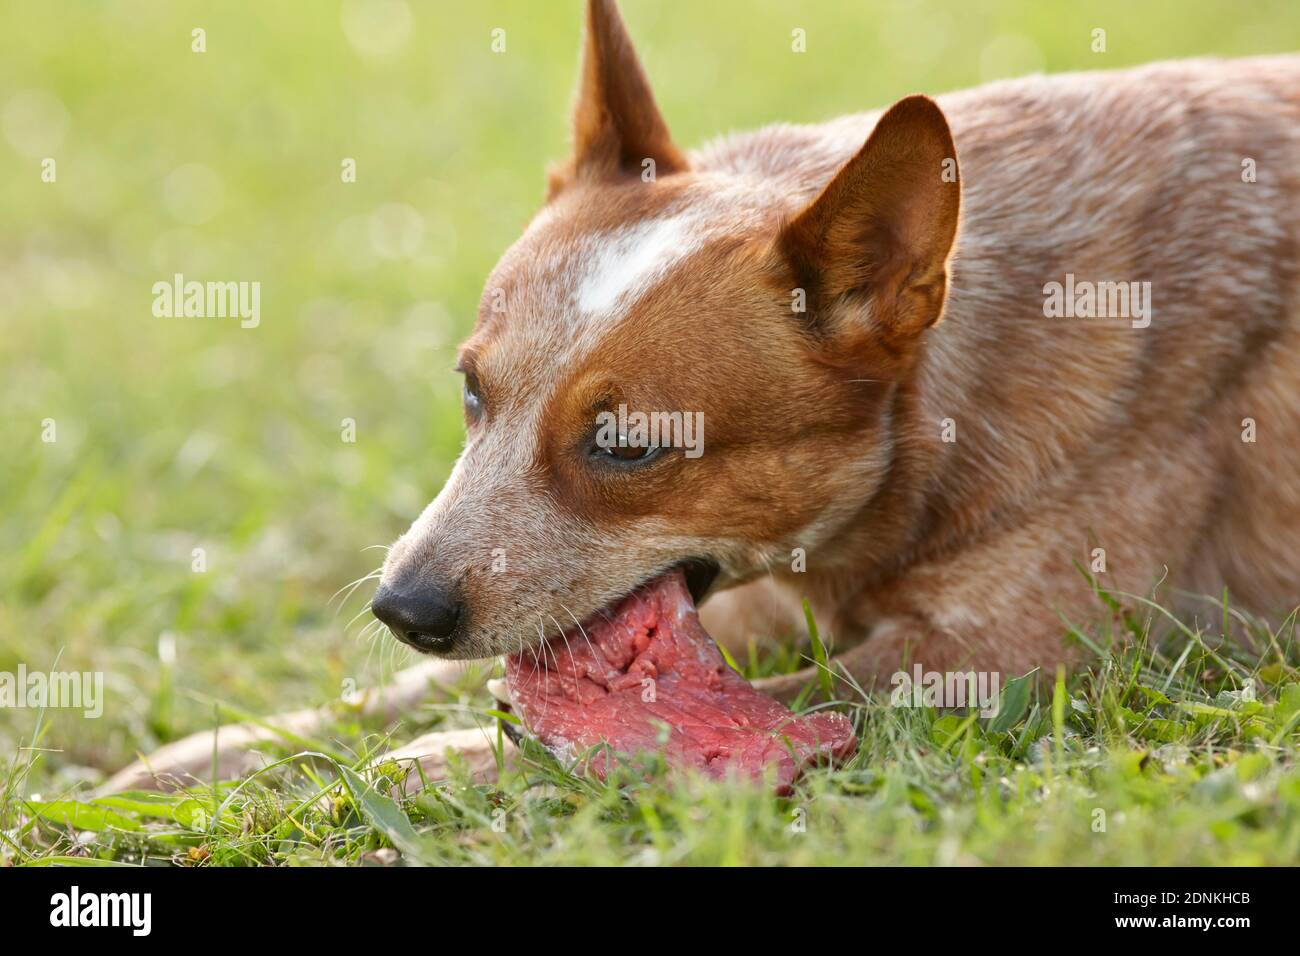 Australischer Rinderhund. Ein ausgewachsener Hund liegt im Gras und kaut auf frischem rohem Fleisch. Deutschland Stockfoto